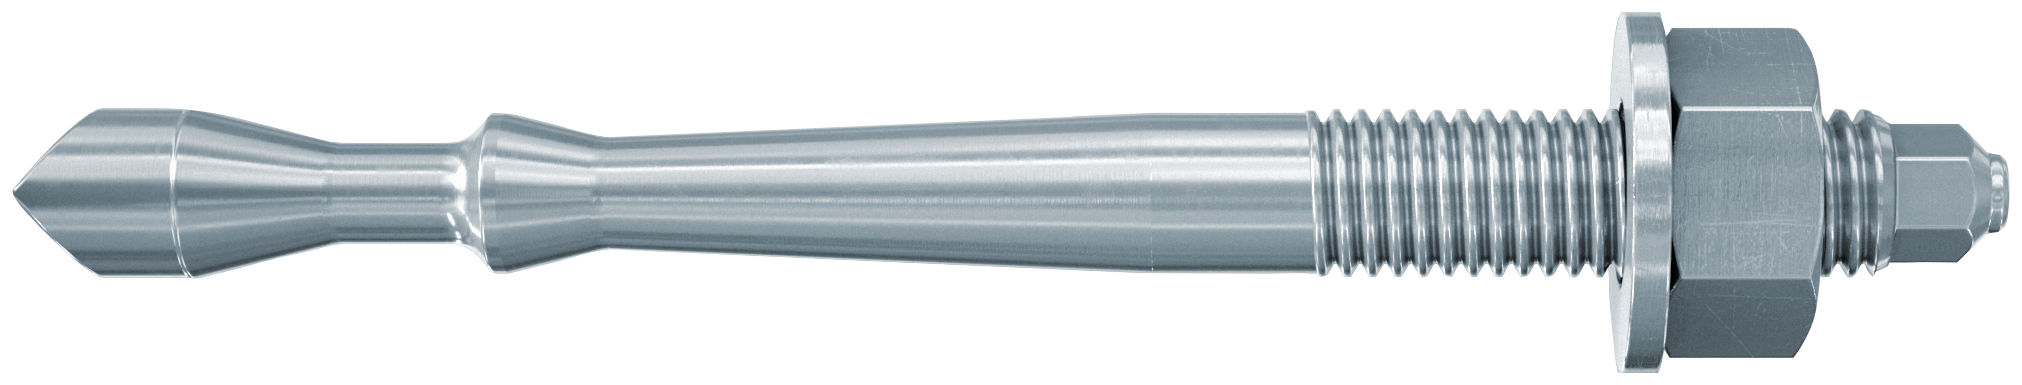 fischer Barra multicono in acciaio FHB II-A S M16x95/165 per ancorante chimico FIS HB (1 Pz.) Barra multicono corta in acciaio zincato classe 8.8. Massime prestazioni a trazione in calcestruzzo fessurato e a ridotte distanze dai bordi..